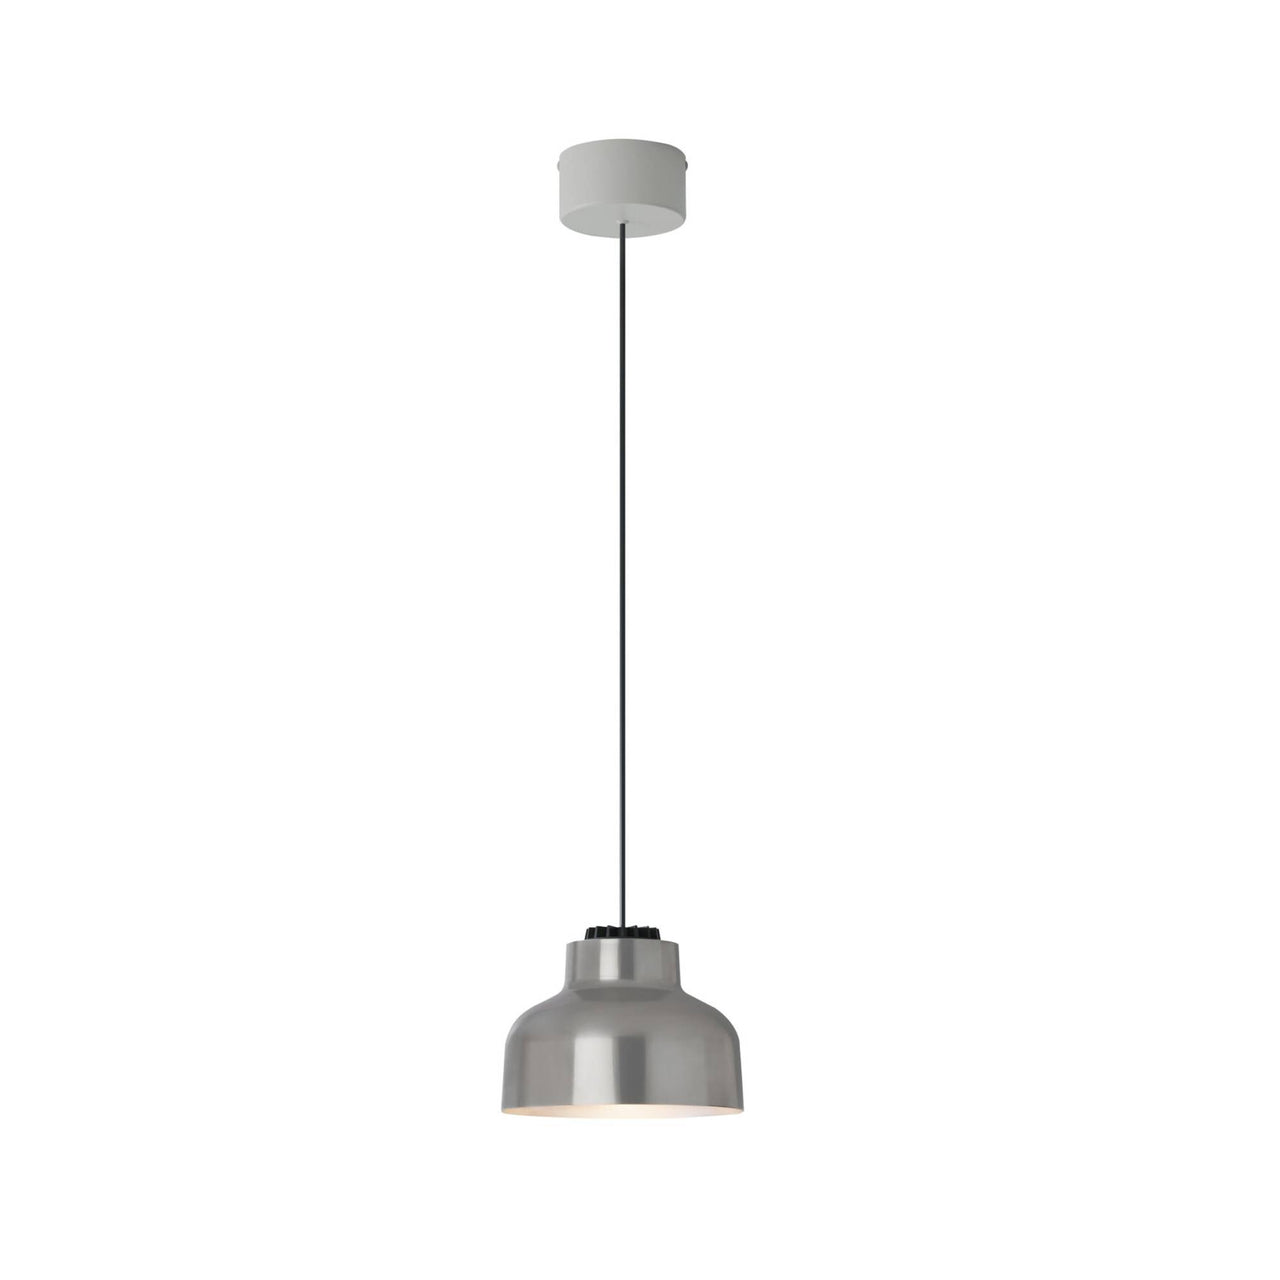 M64 Pendant Lamp: Polished Aluminum + White